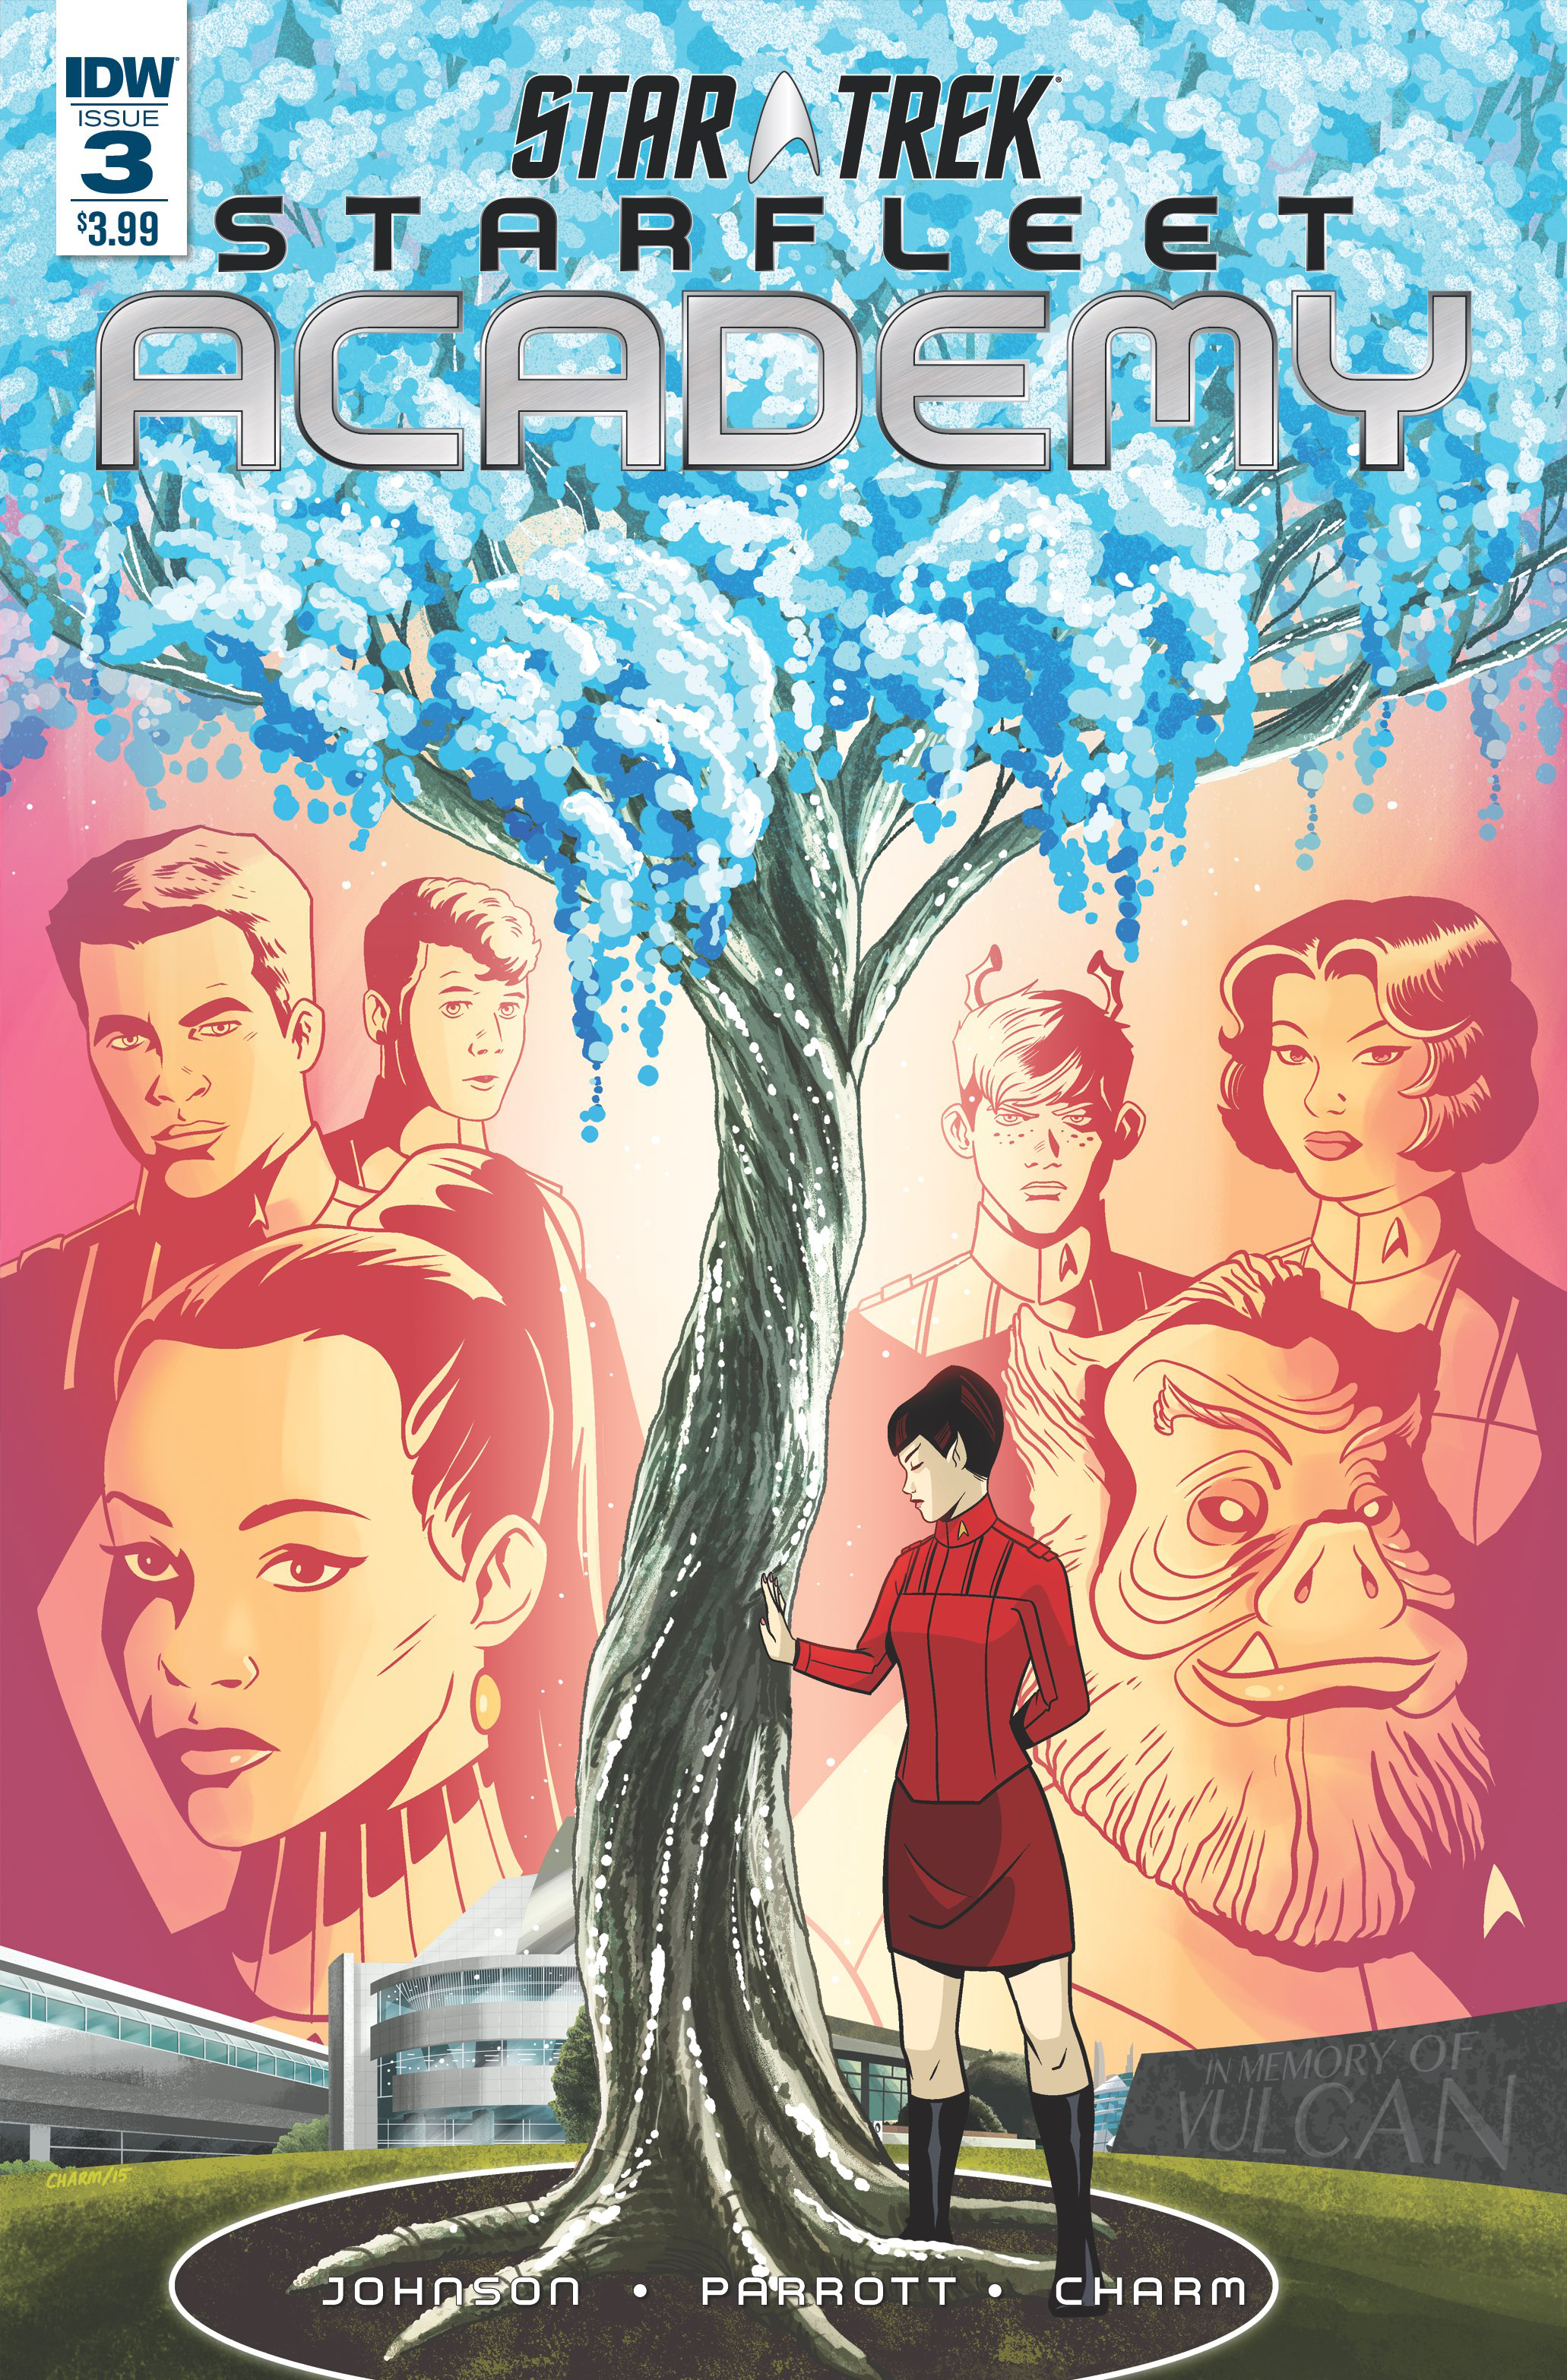 Star Trek: Starfleet Academy (IDW, 2015 series) #3 [Regular Cover]